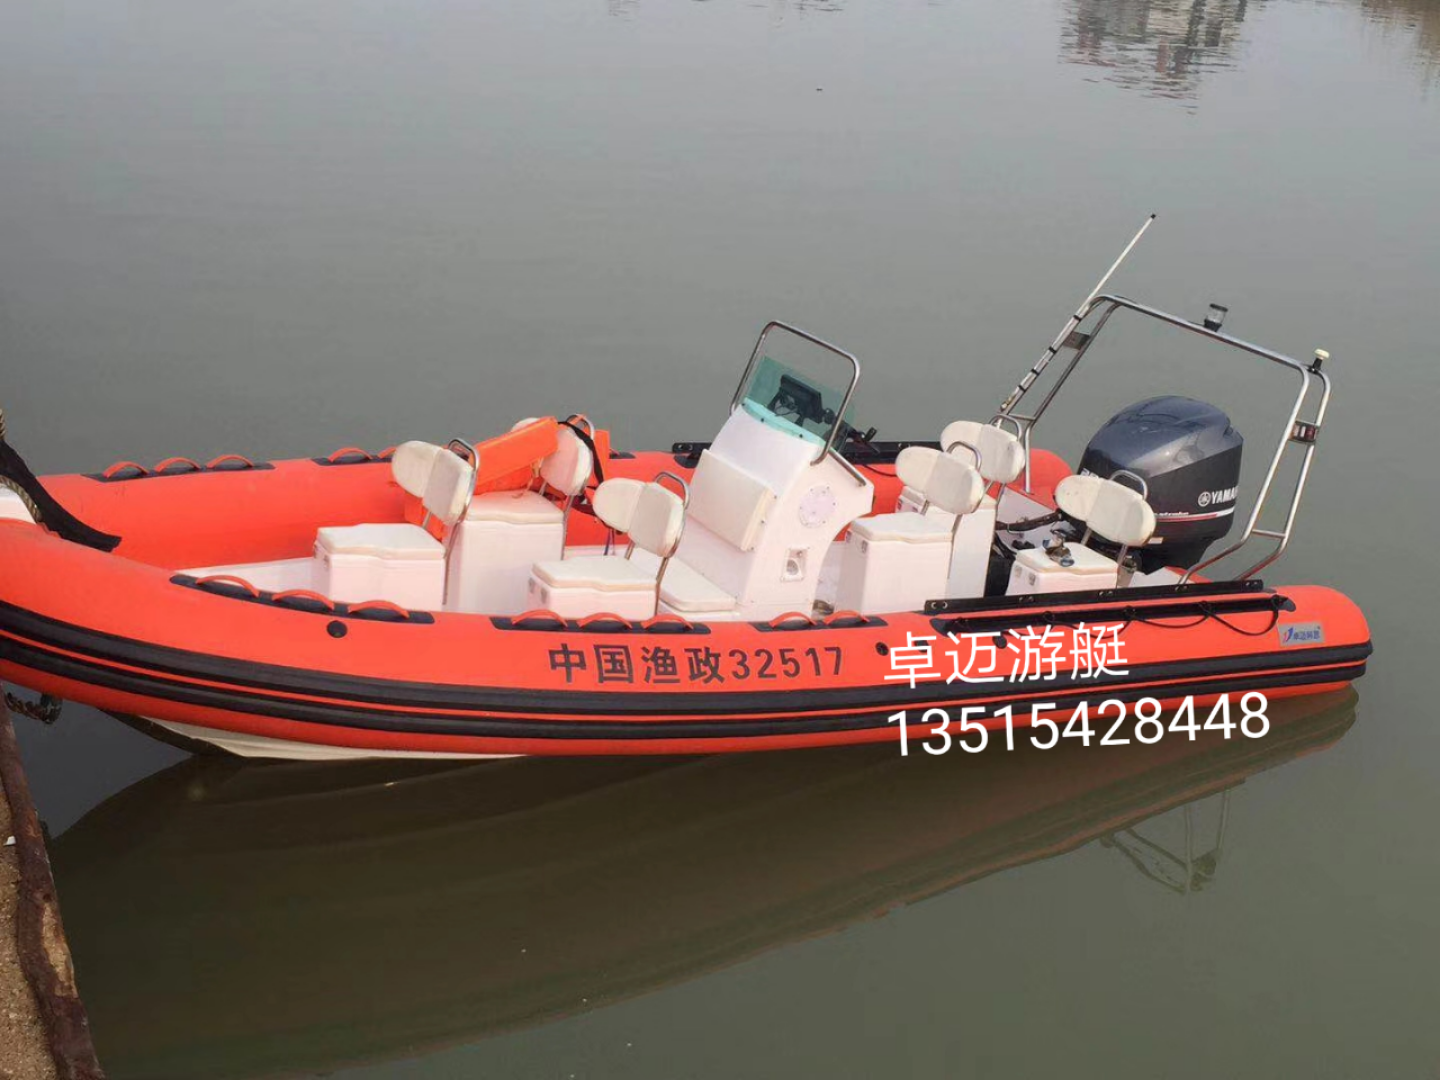 Freizeitfischerboot mit Außenbordmotor